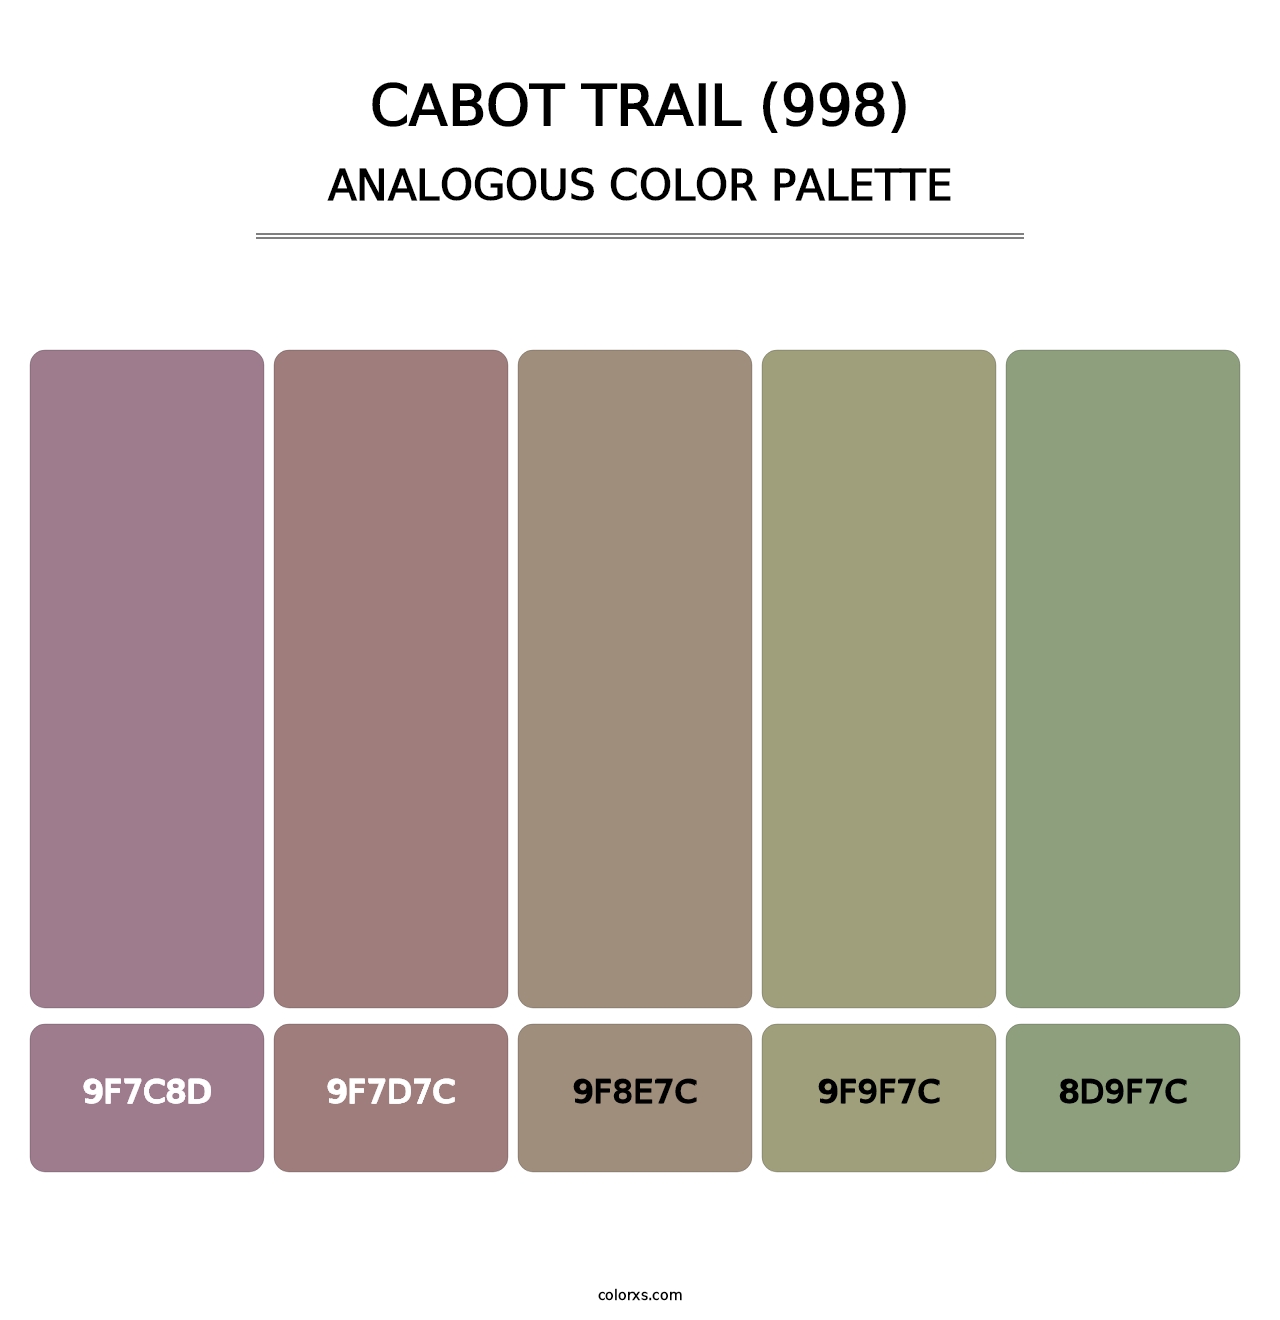 Cabot Trail (998) - Analogous Color Palette